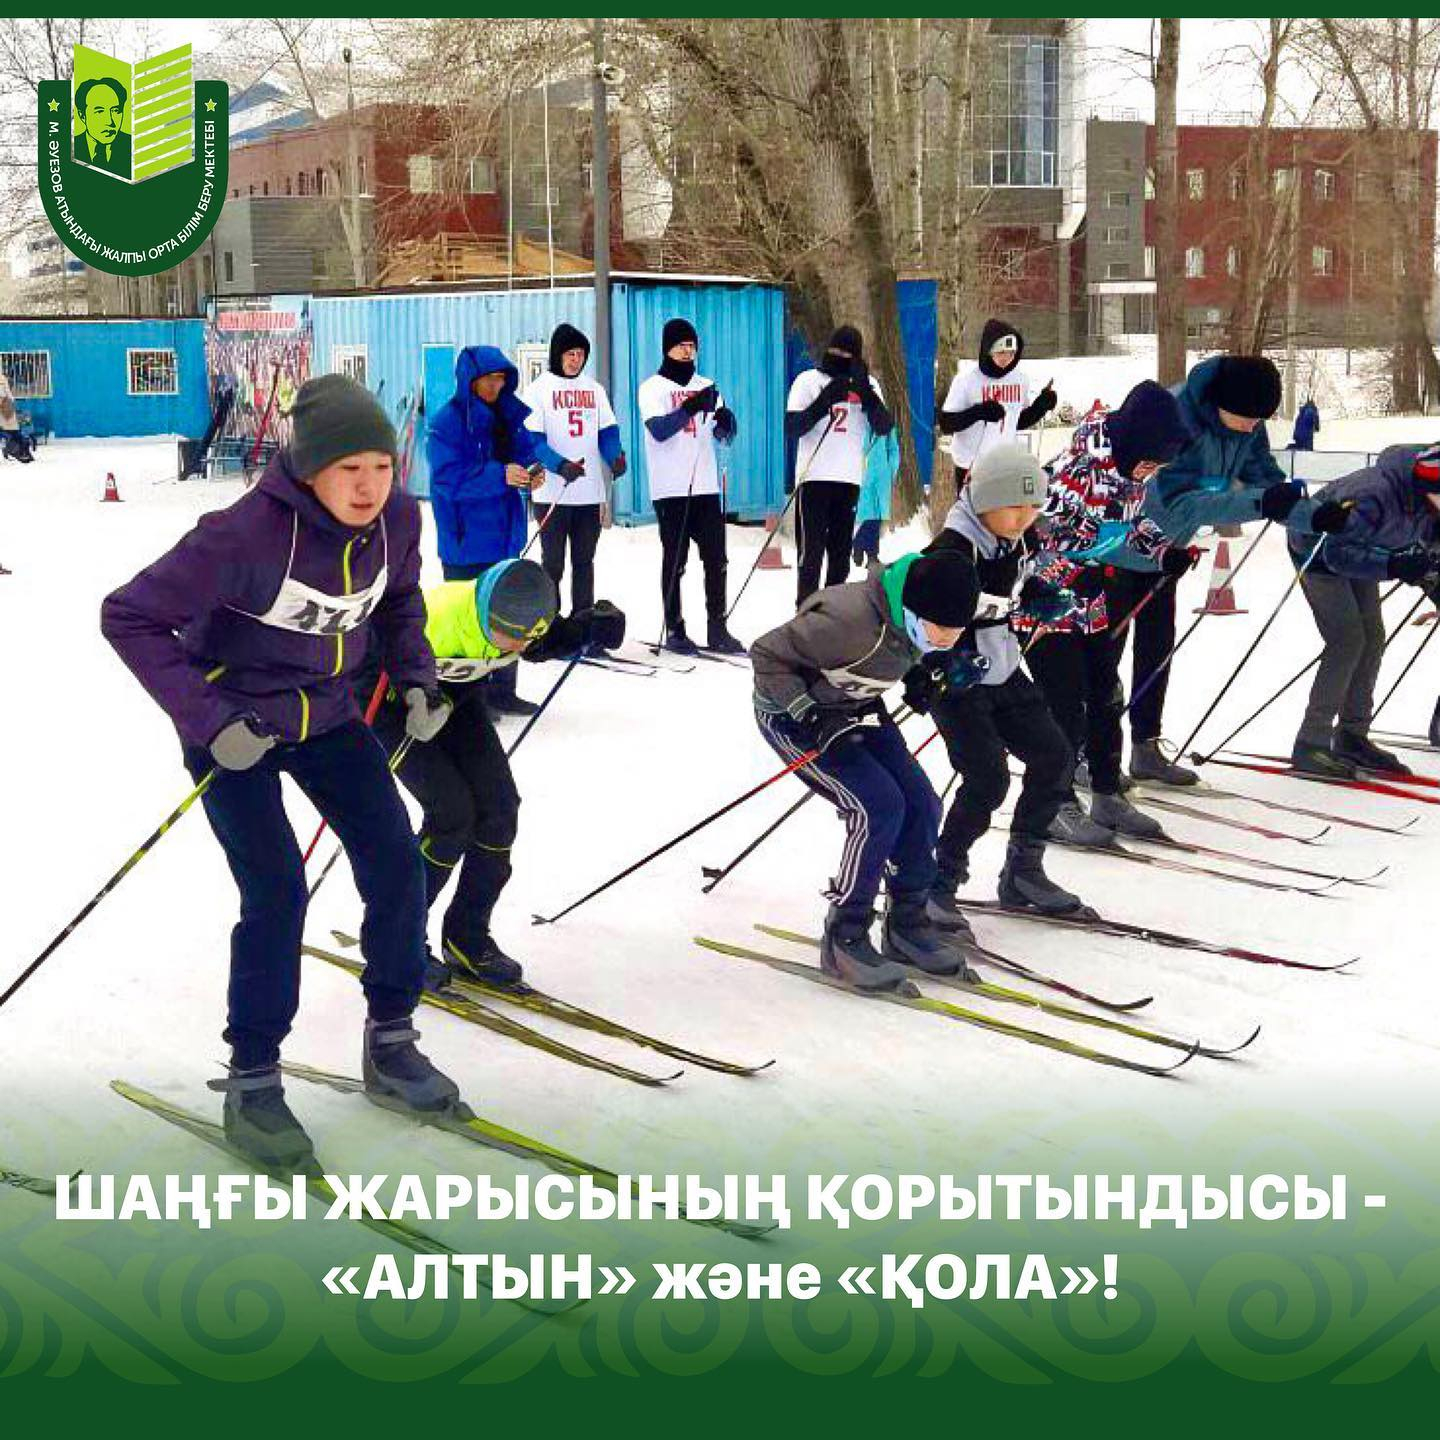 11 января на лыжной базе «Eртic» прошла городская спартакиада по лыжным гонкам среди учащихся общеобразовательных школ города.